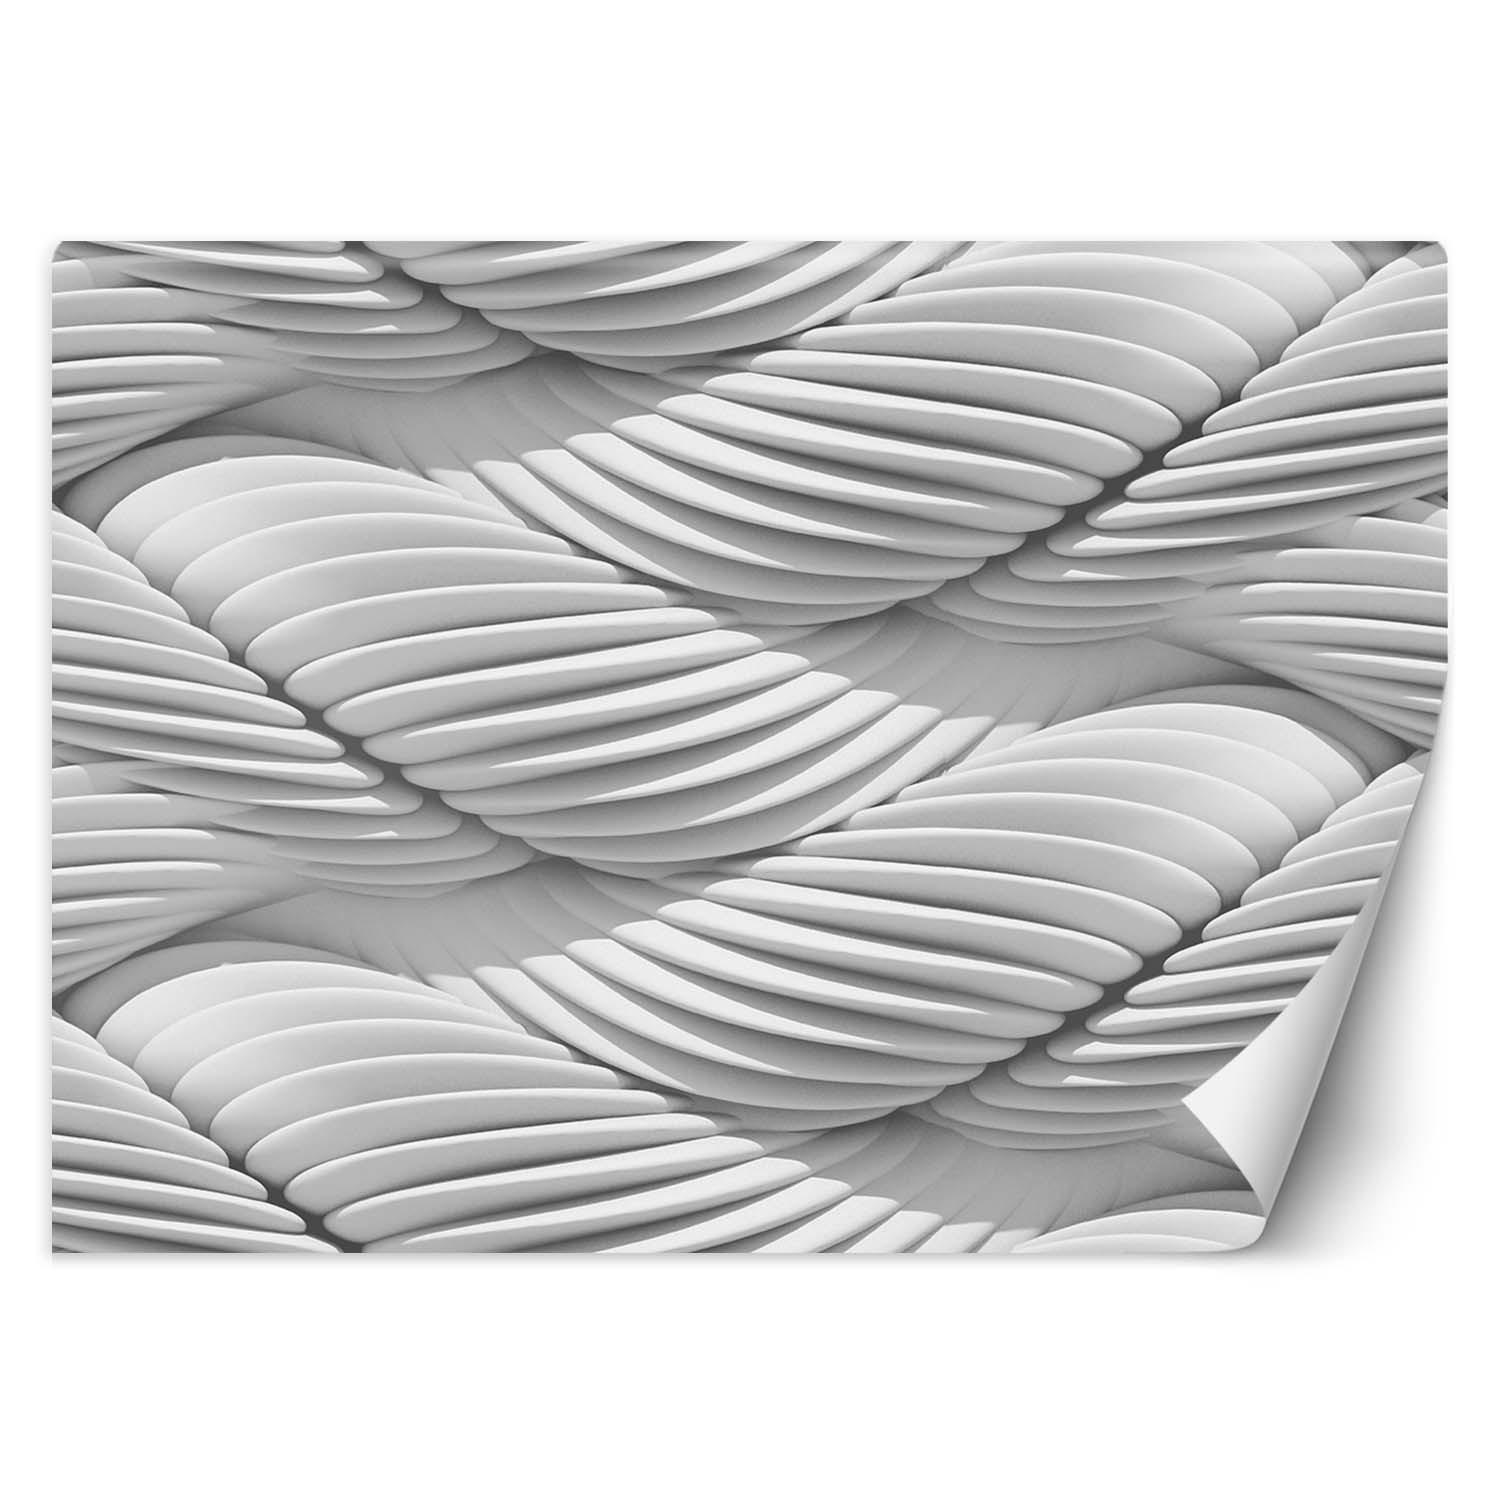 Trend24 – Behang – Abstracte Golven 3D – Vliesbehang – Fotobehang 3D – Behang Woonkamer – 450x315x2 cm – Incl. behanglijm